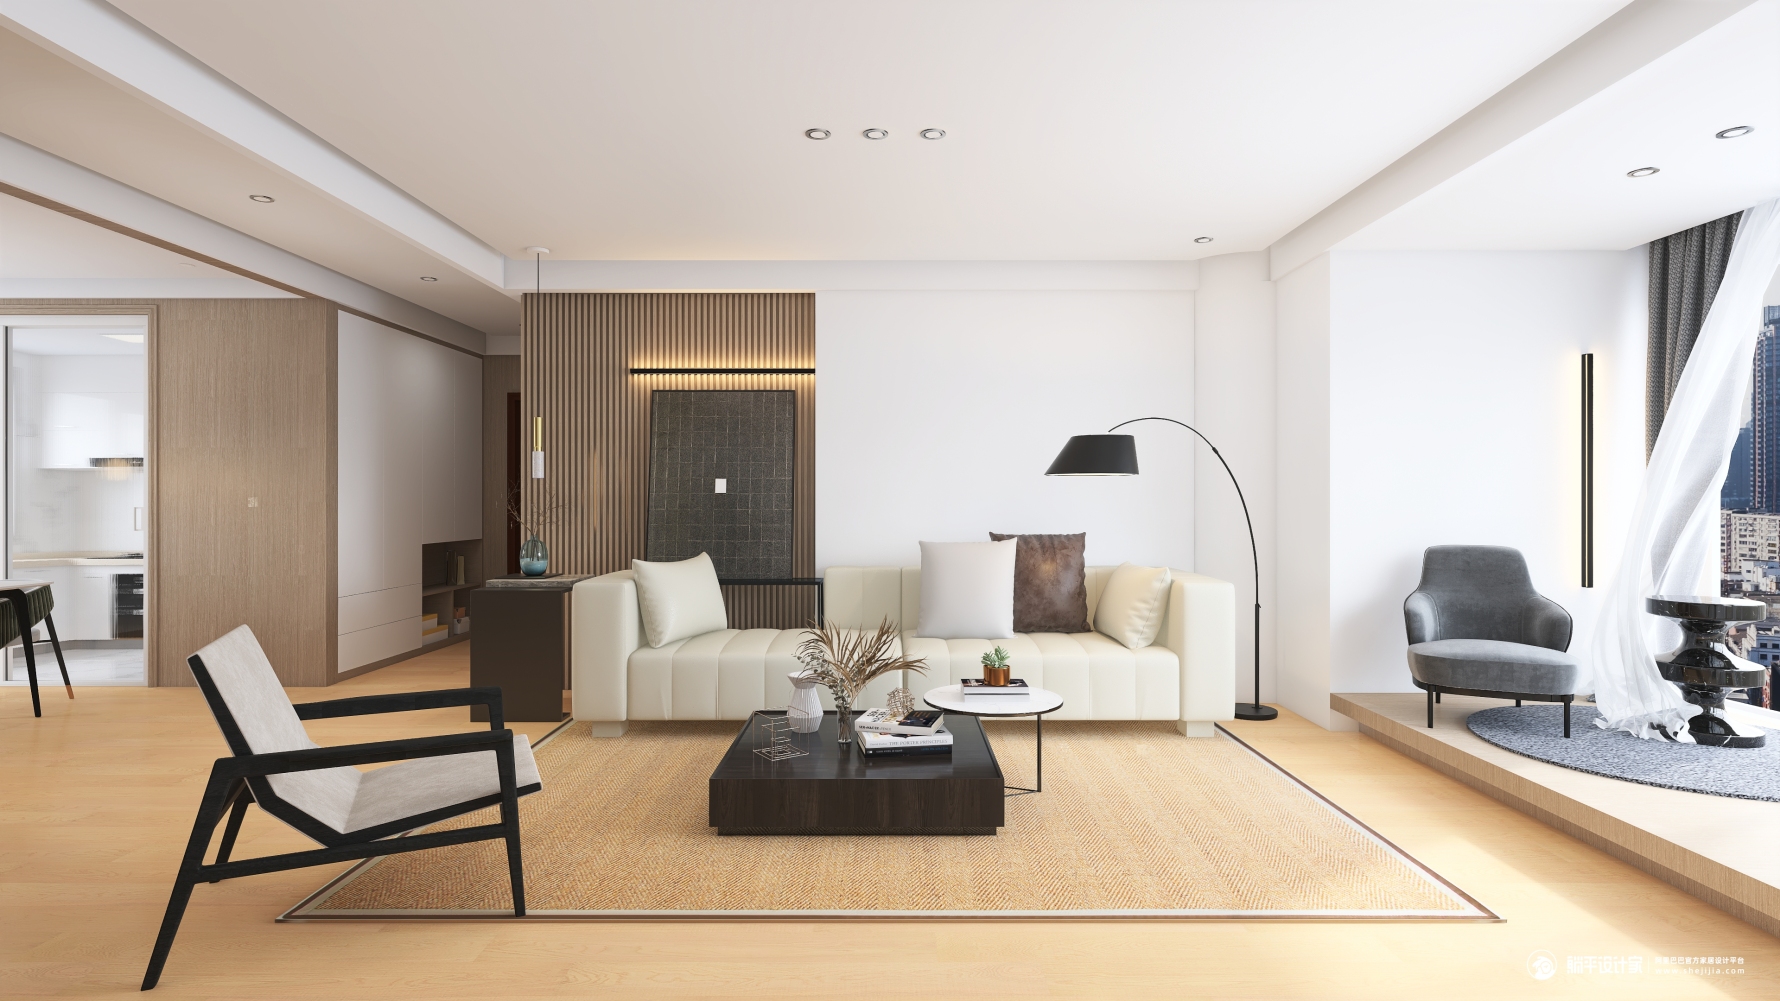 现代简约待完成 - 现代风格四室两厅装修效果图 - 田丙雨设计效果图 - 每平每屋·设计家